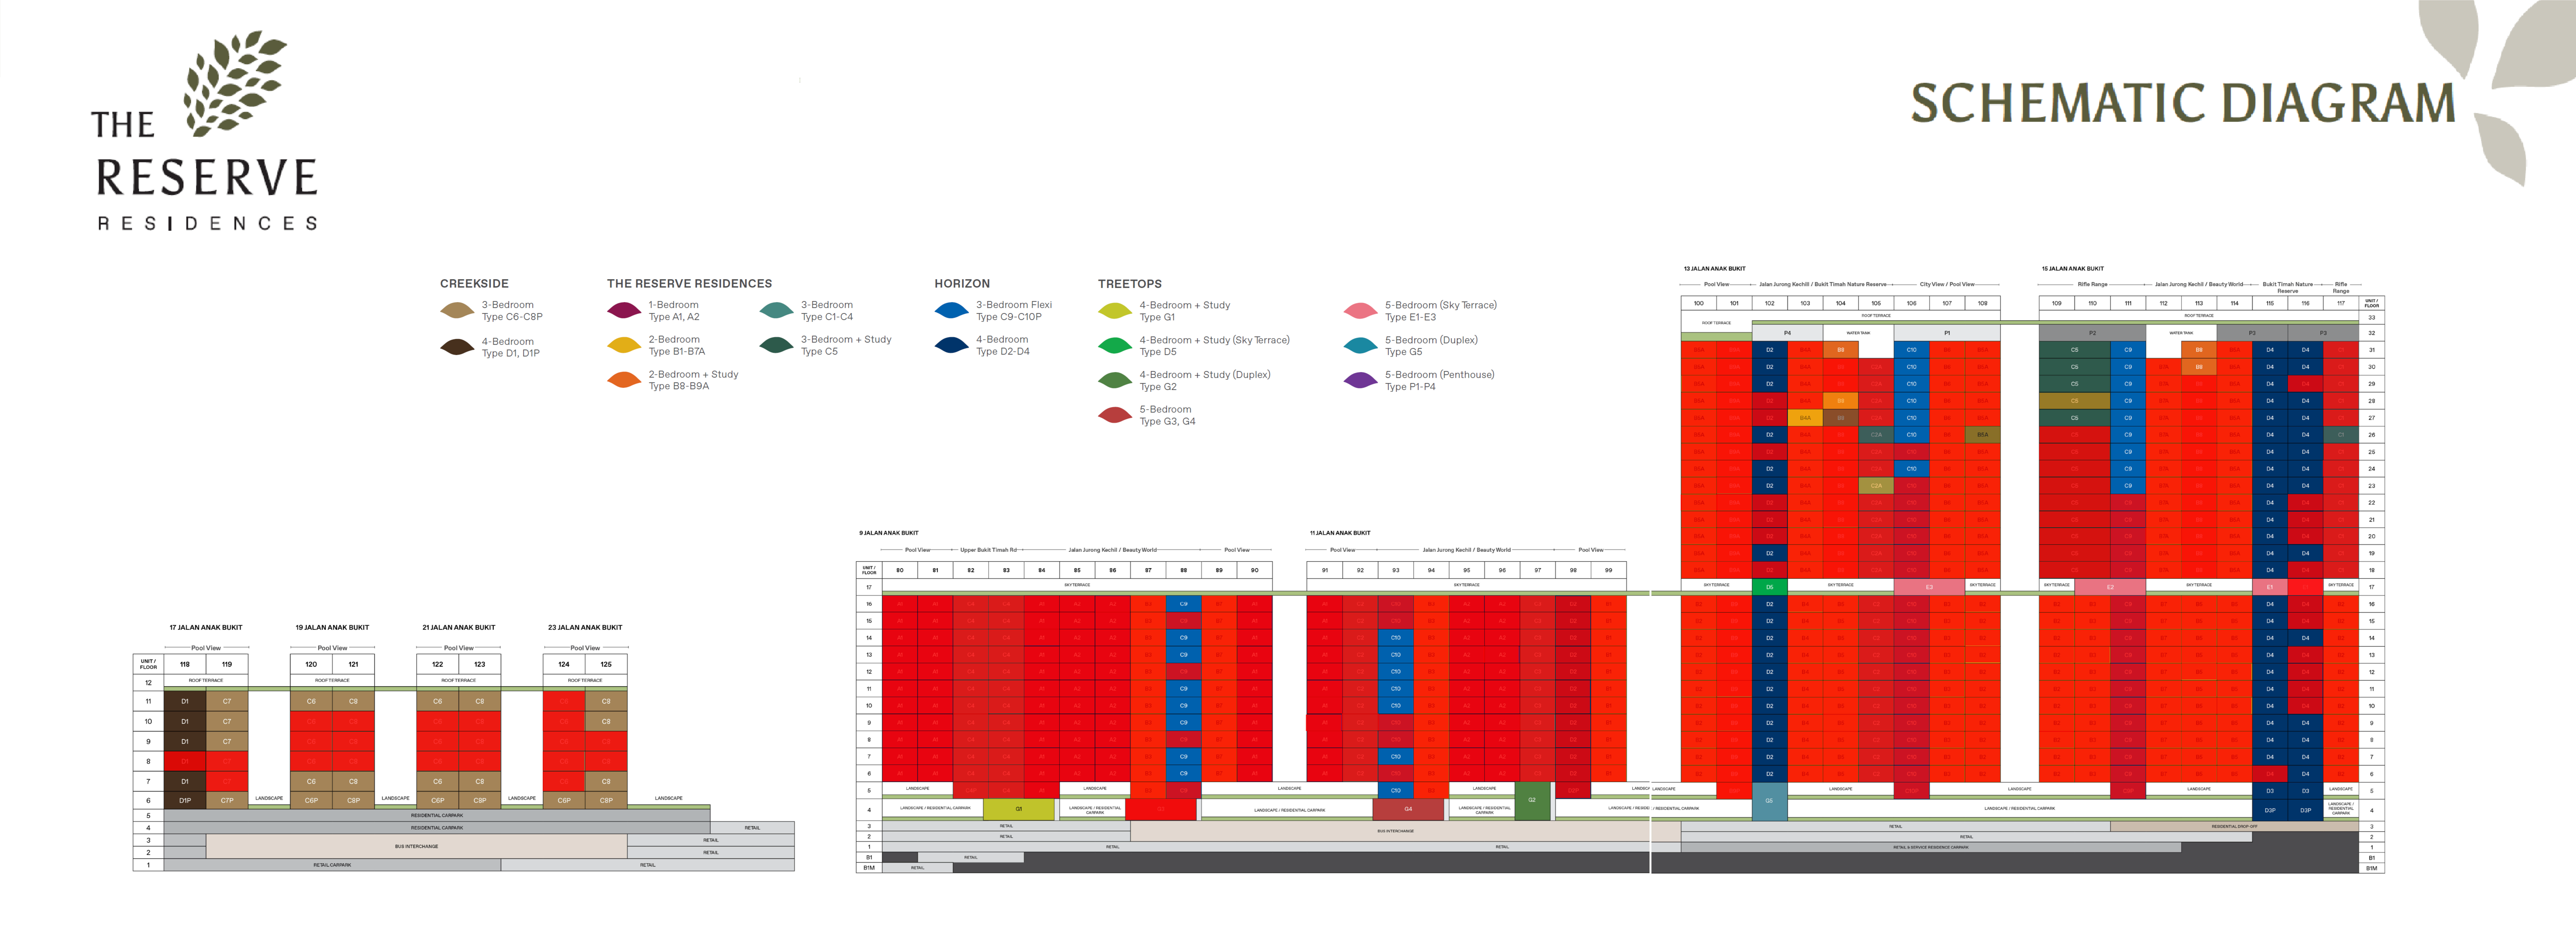 kopar-at-newton-availability-chart